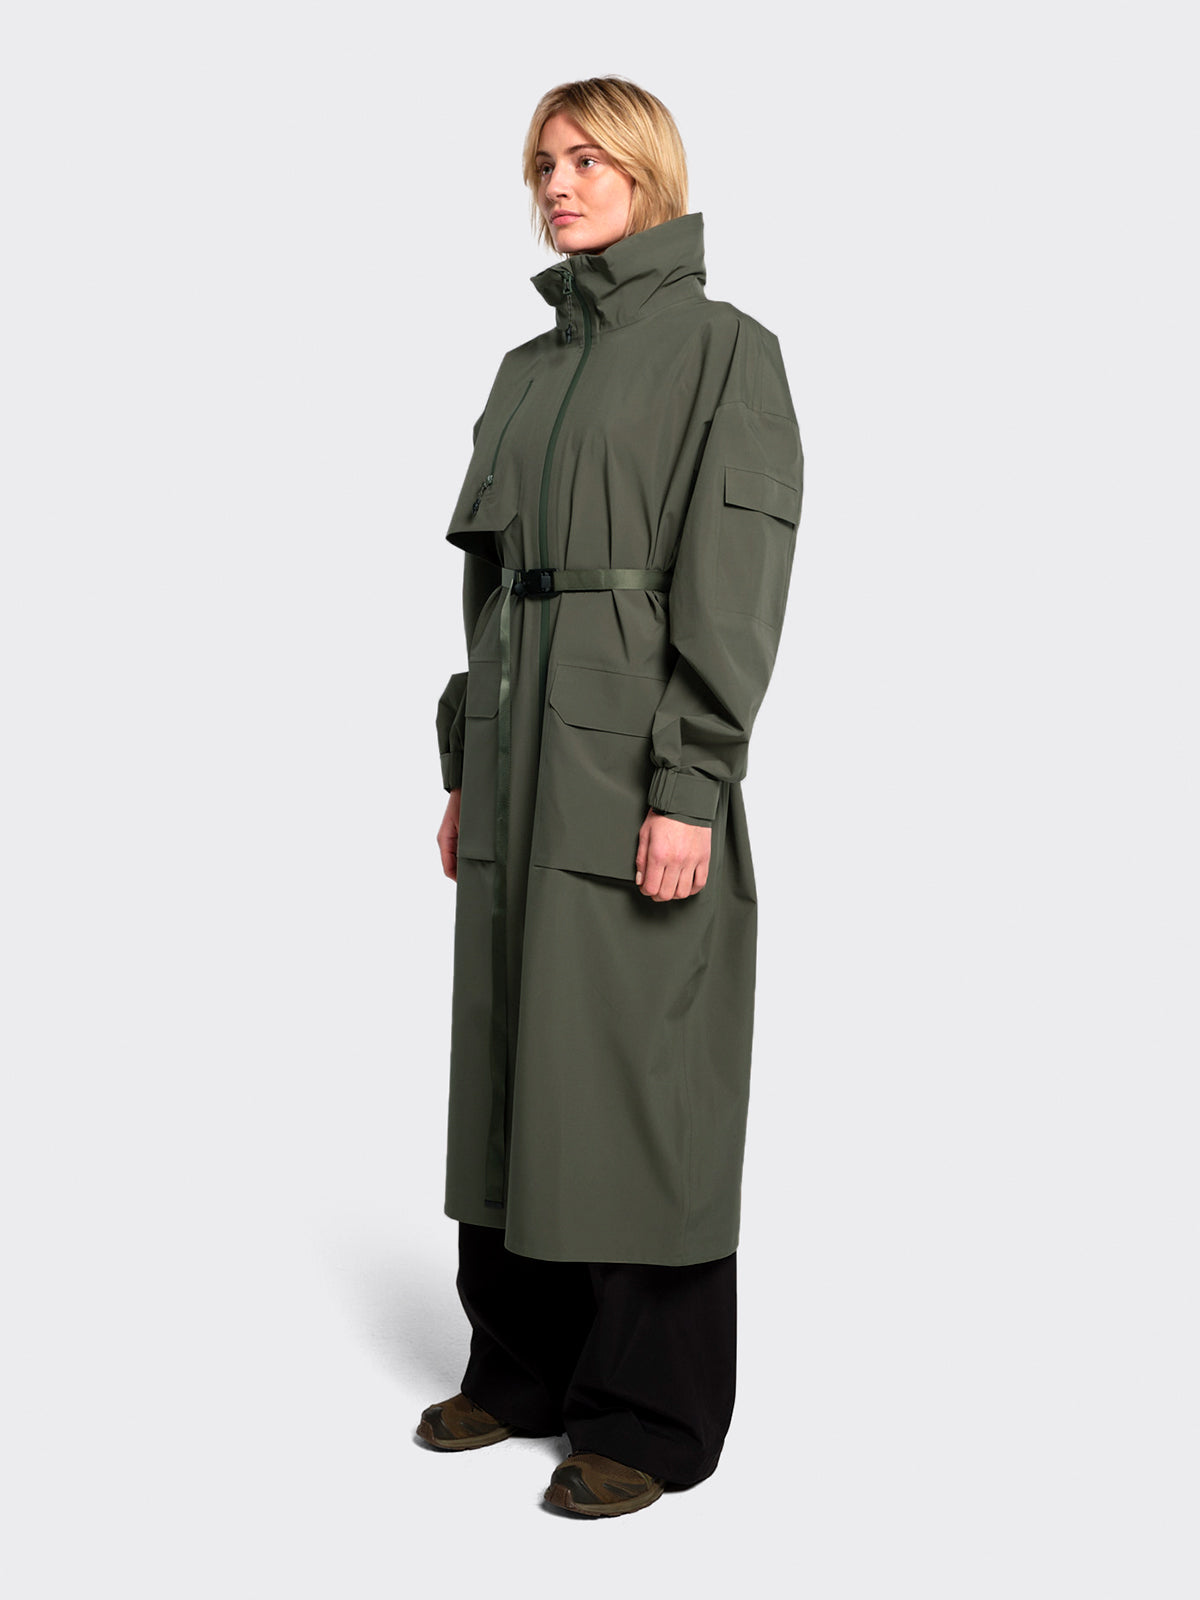 Woman wearing Klipra coat from Blæst in Dusty Green